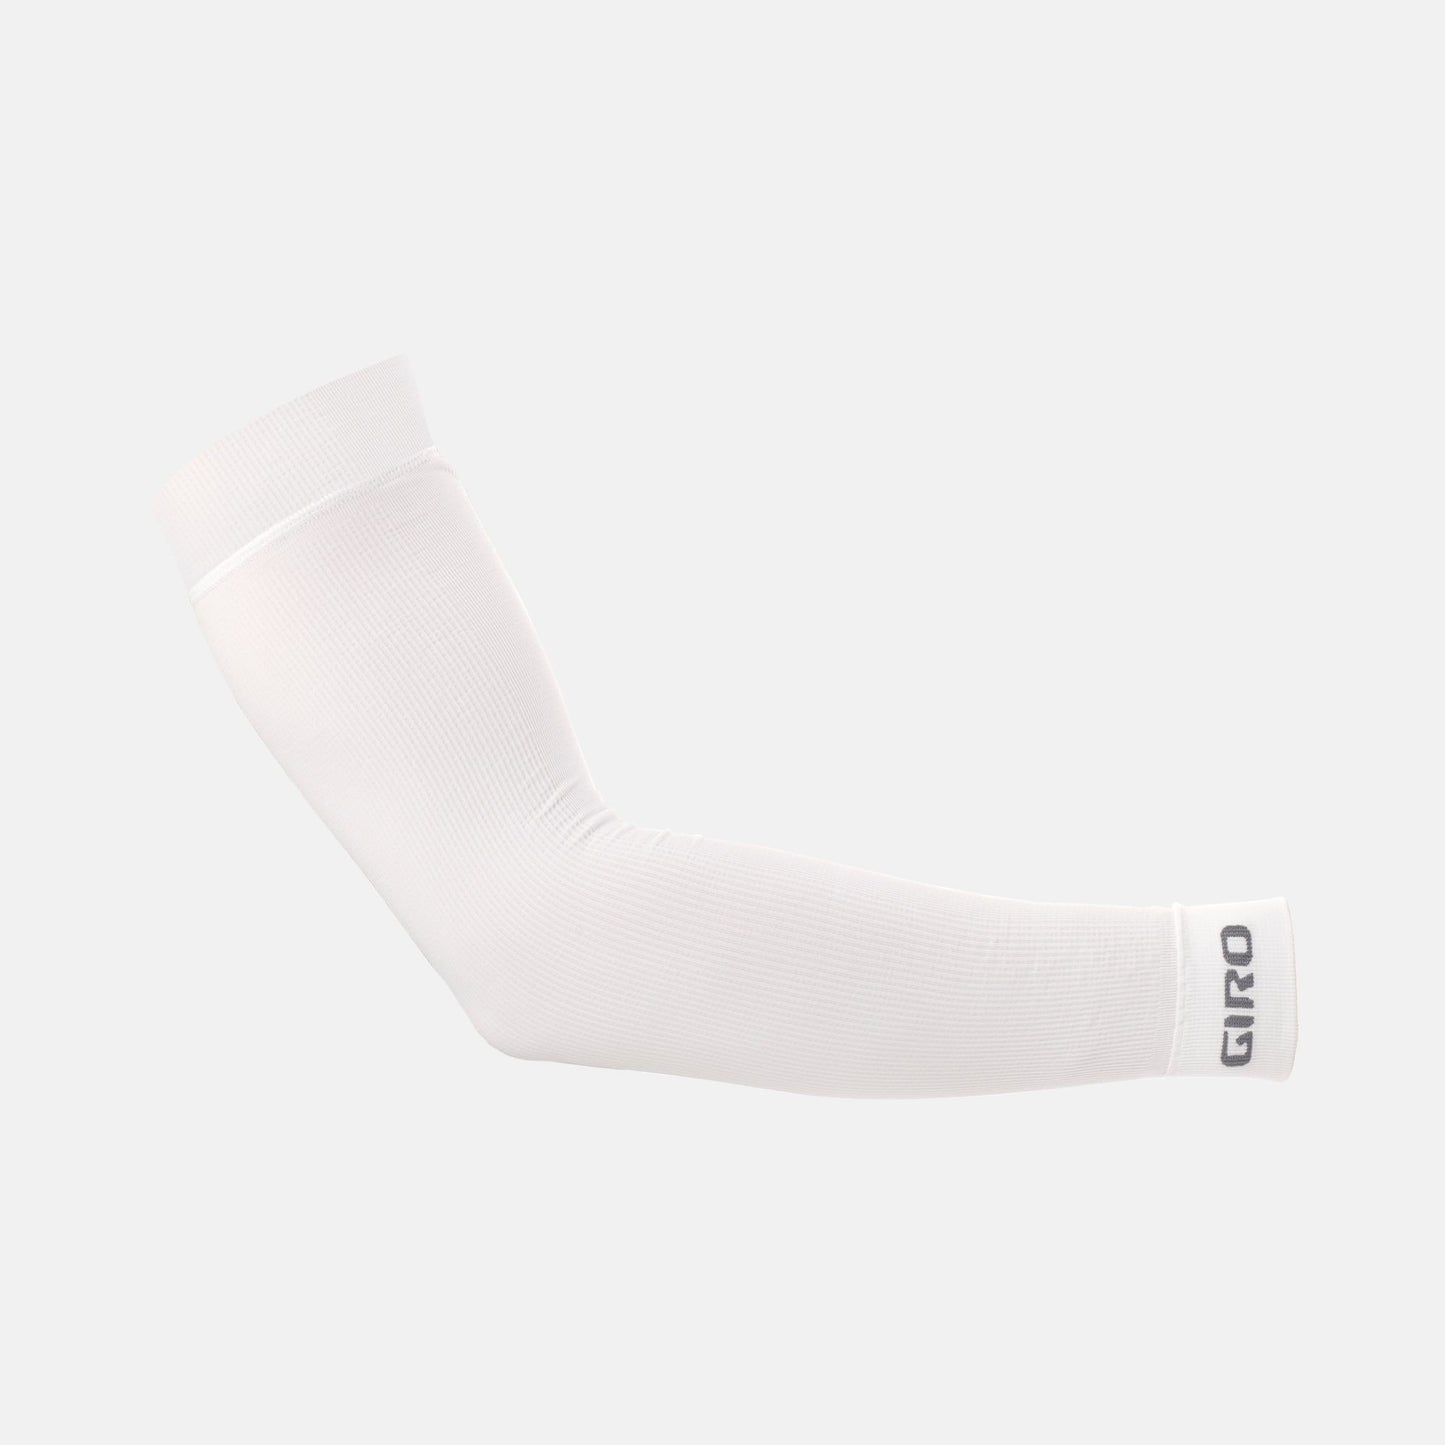 Giro Chrono UV Arm Sleeves - White - Size XL/XXL